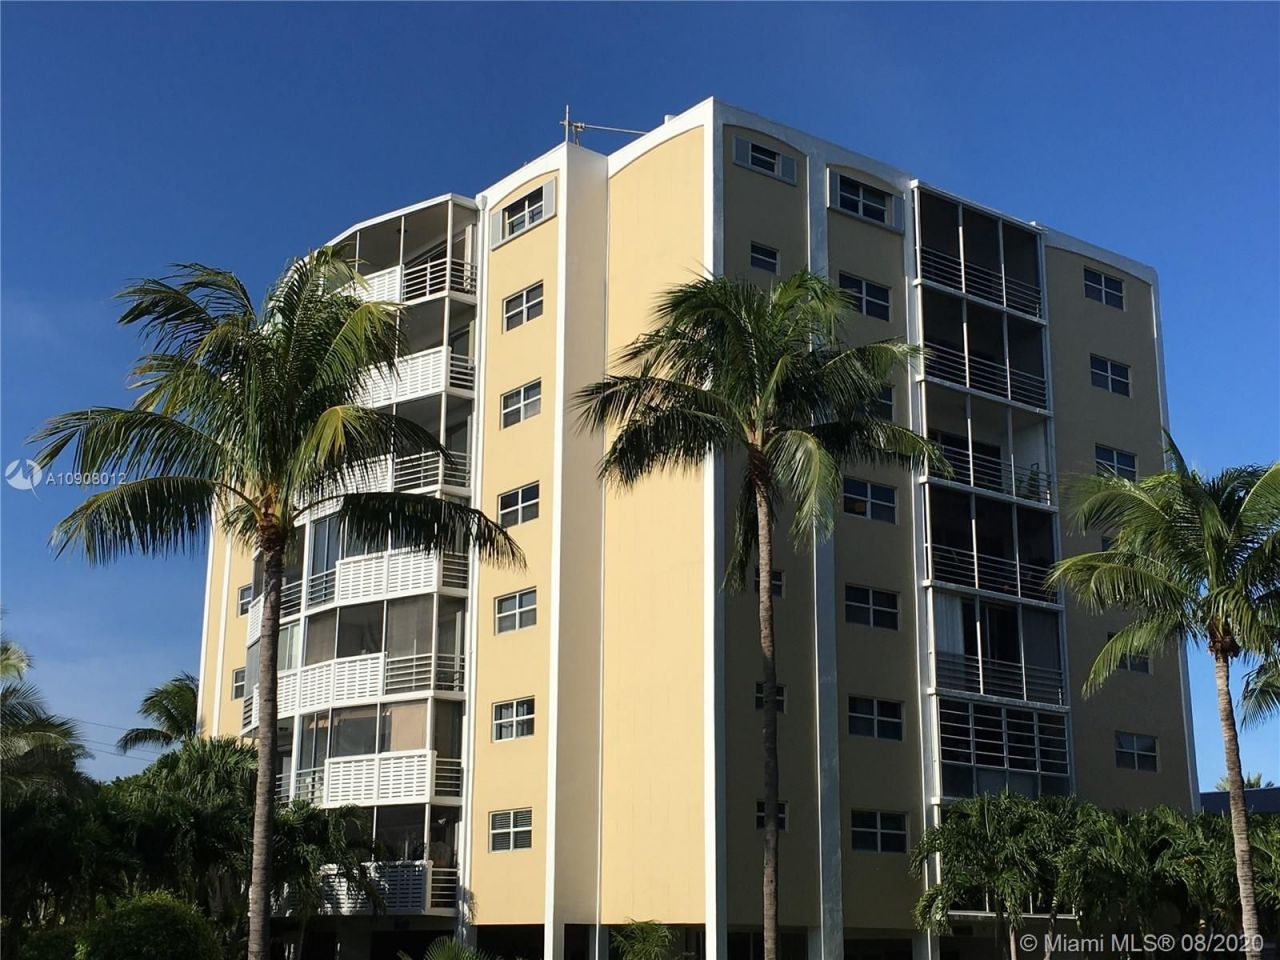 Apartment in Miami, USA, 101 sq.m - picture 1